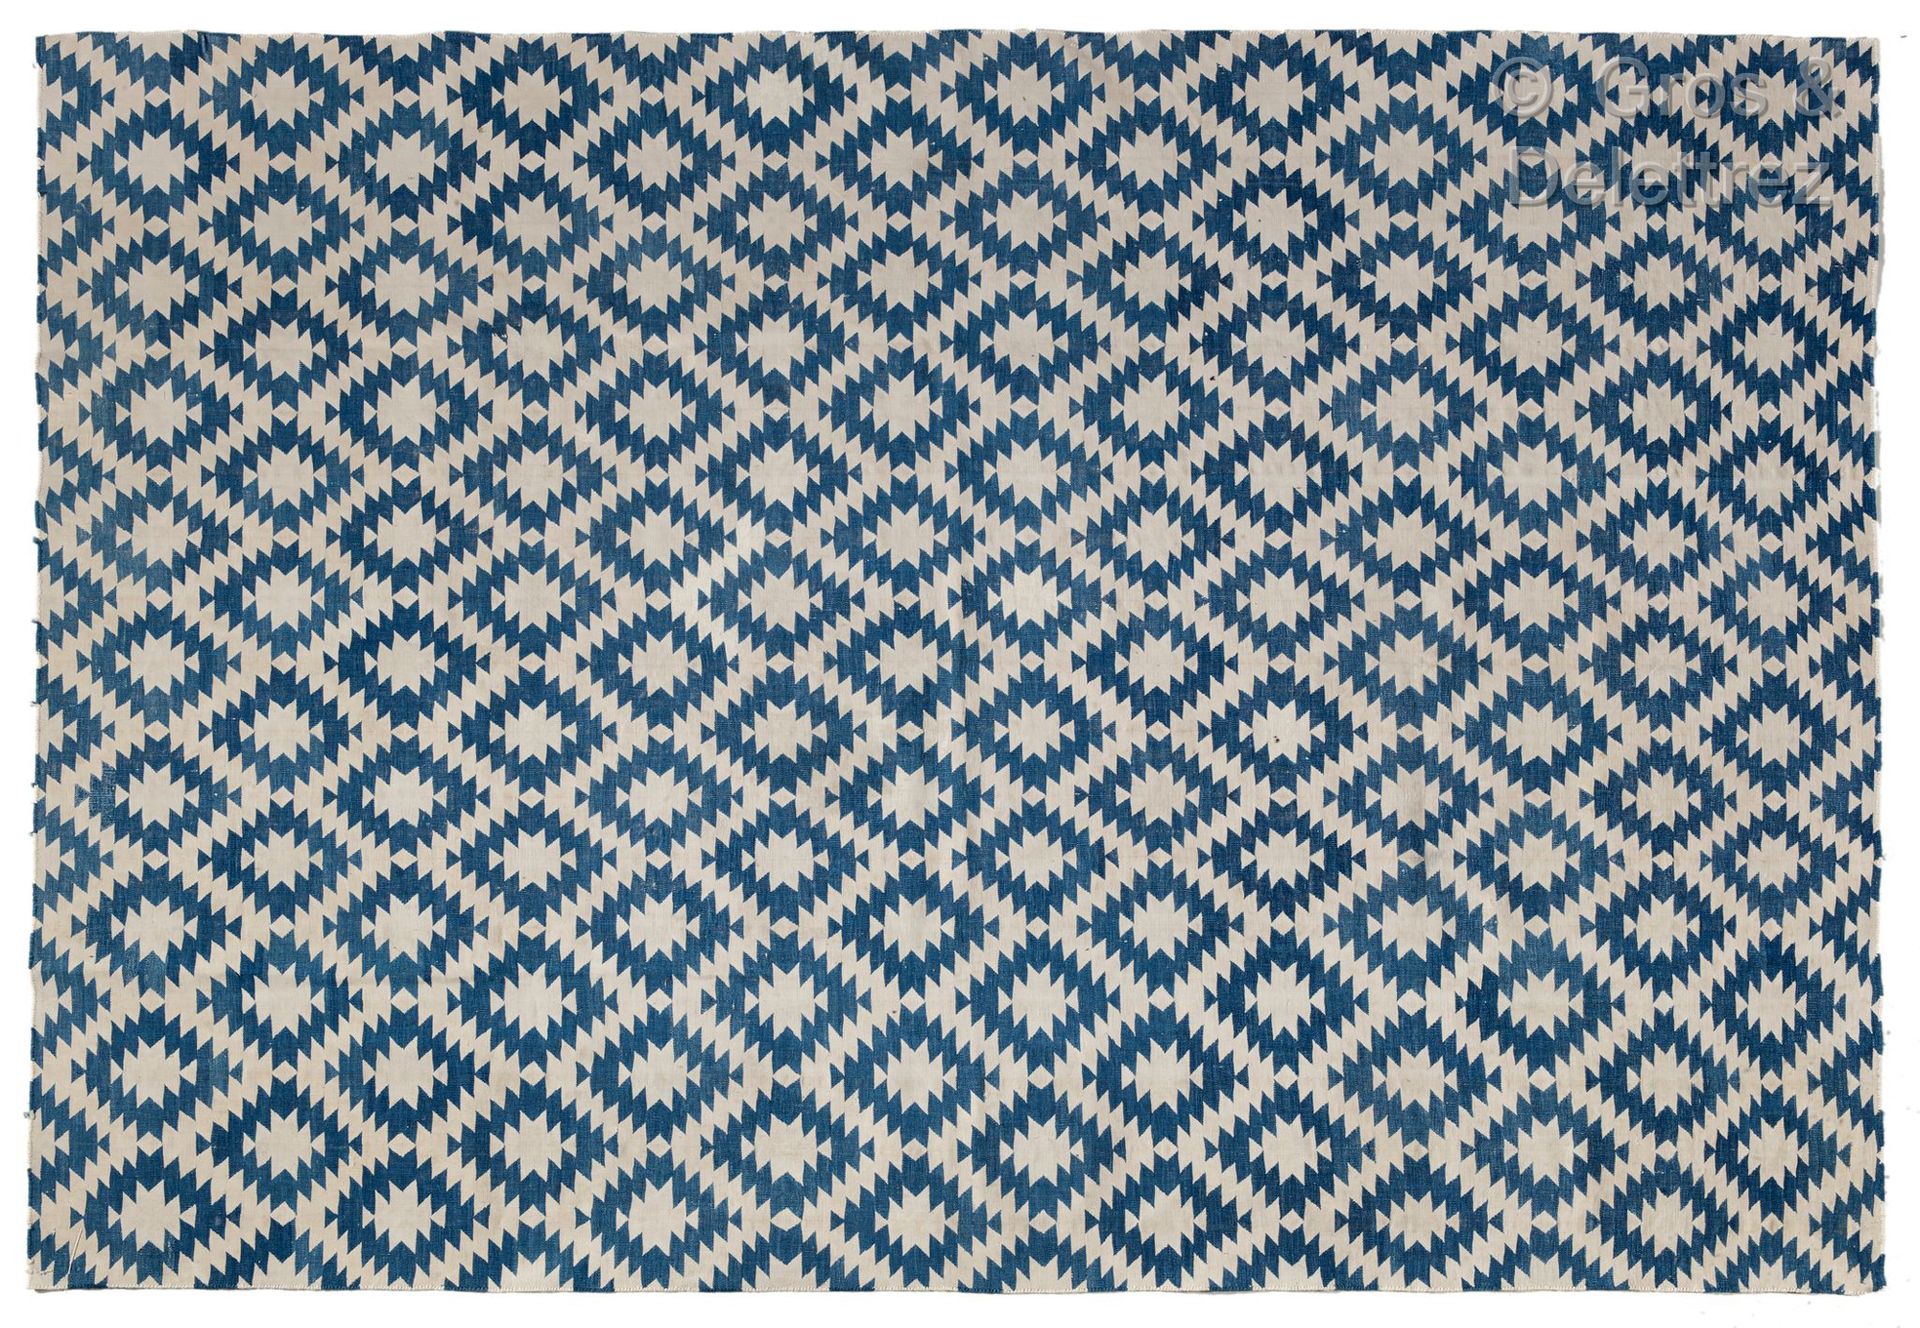 INDIAN DHURRIE Teppich aus Schurwolle mit geometrischem Dekor in Blau und Weiß.
&hellip;